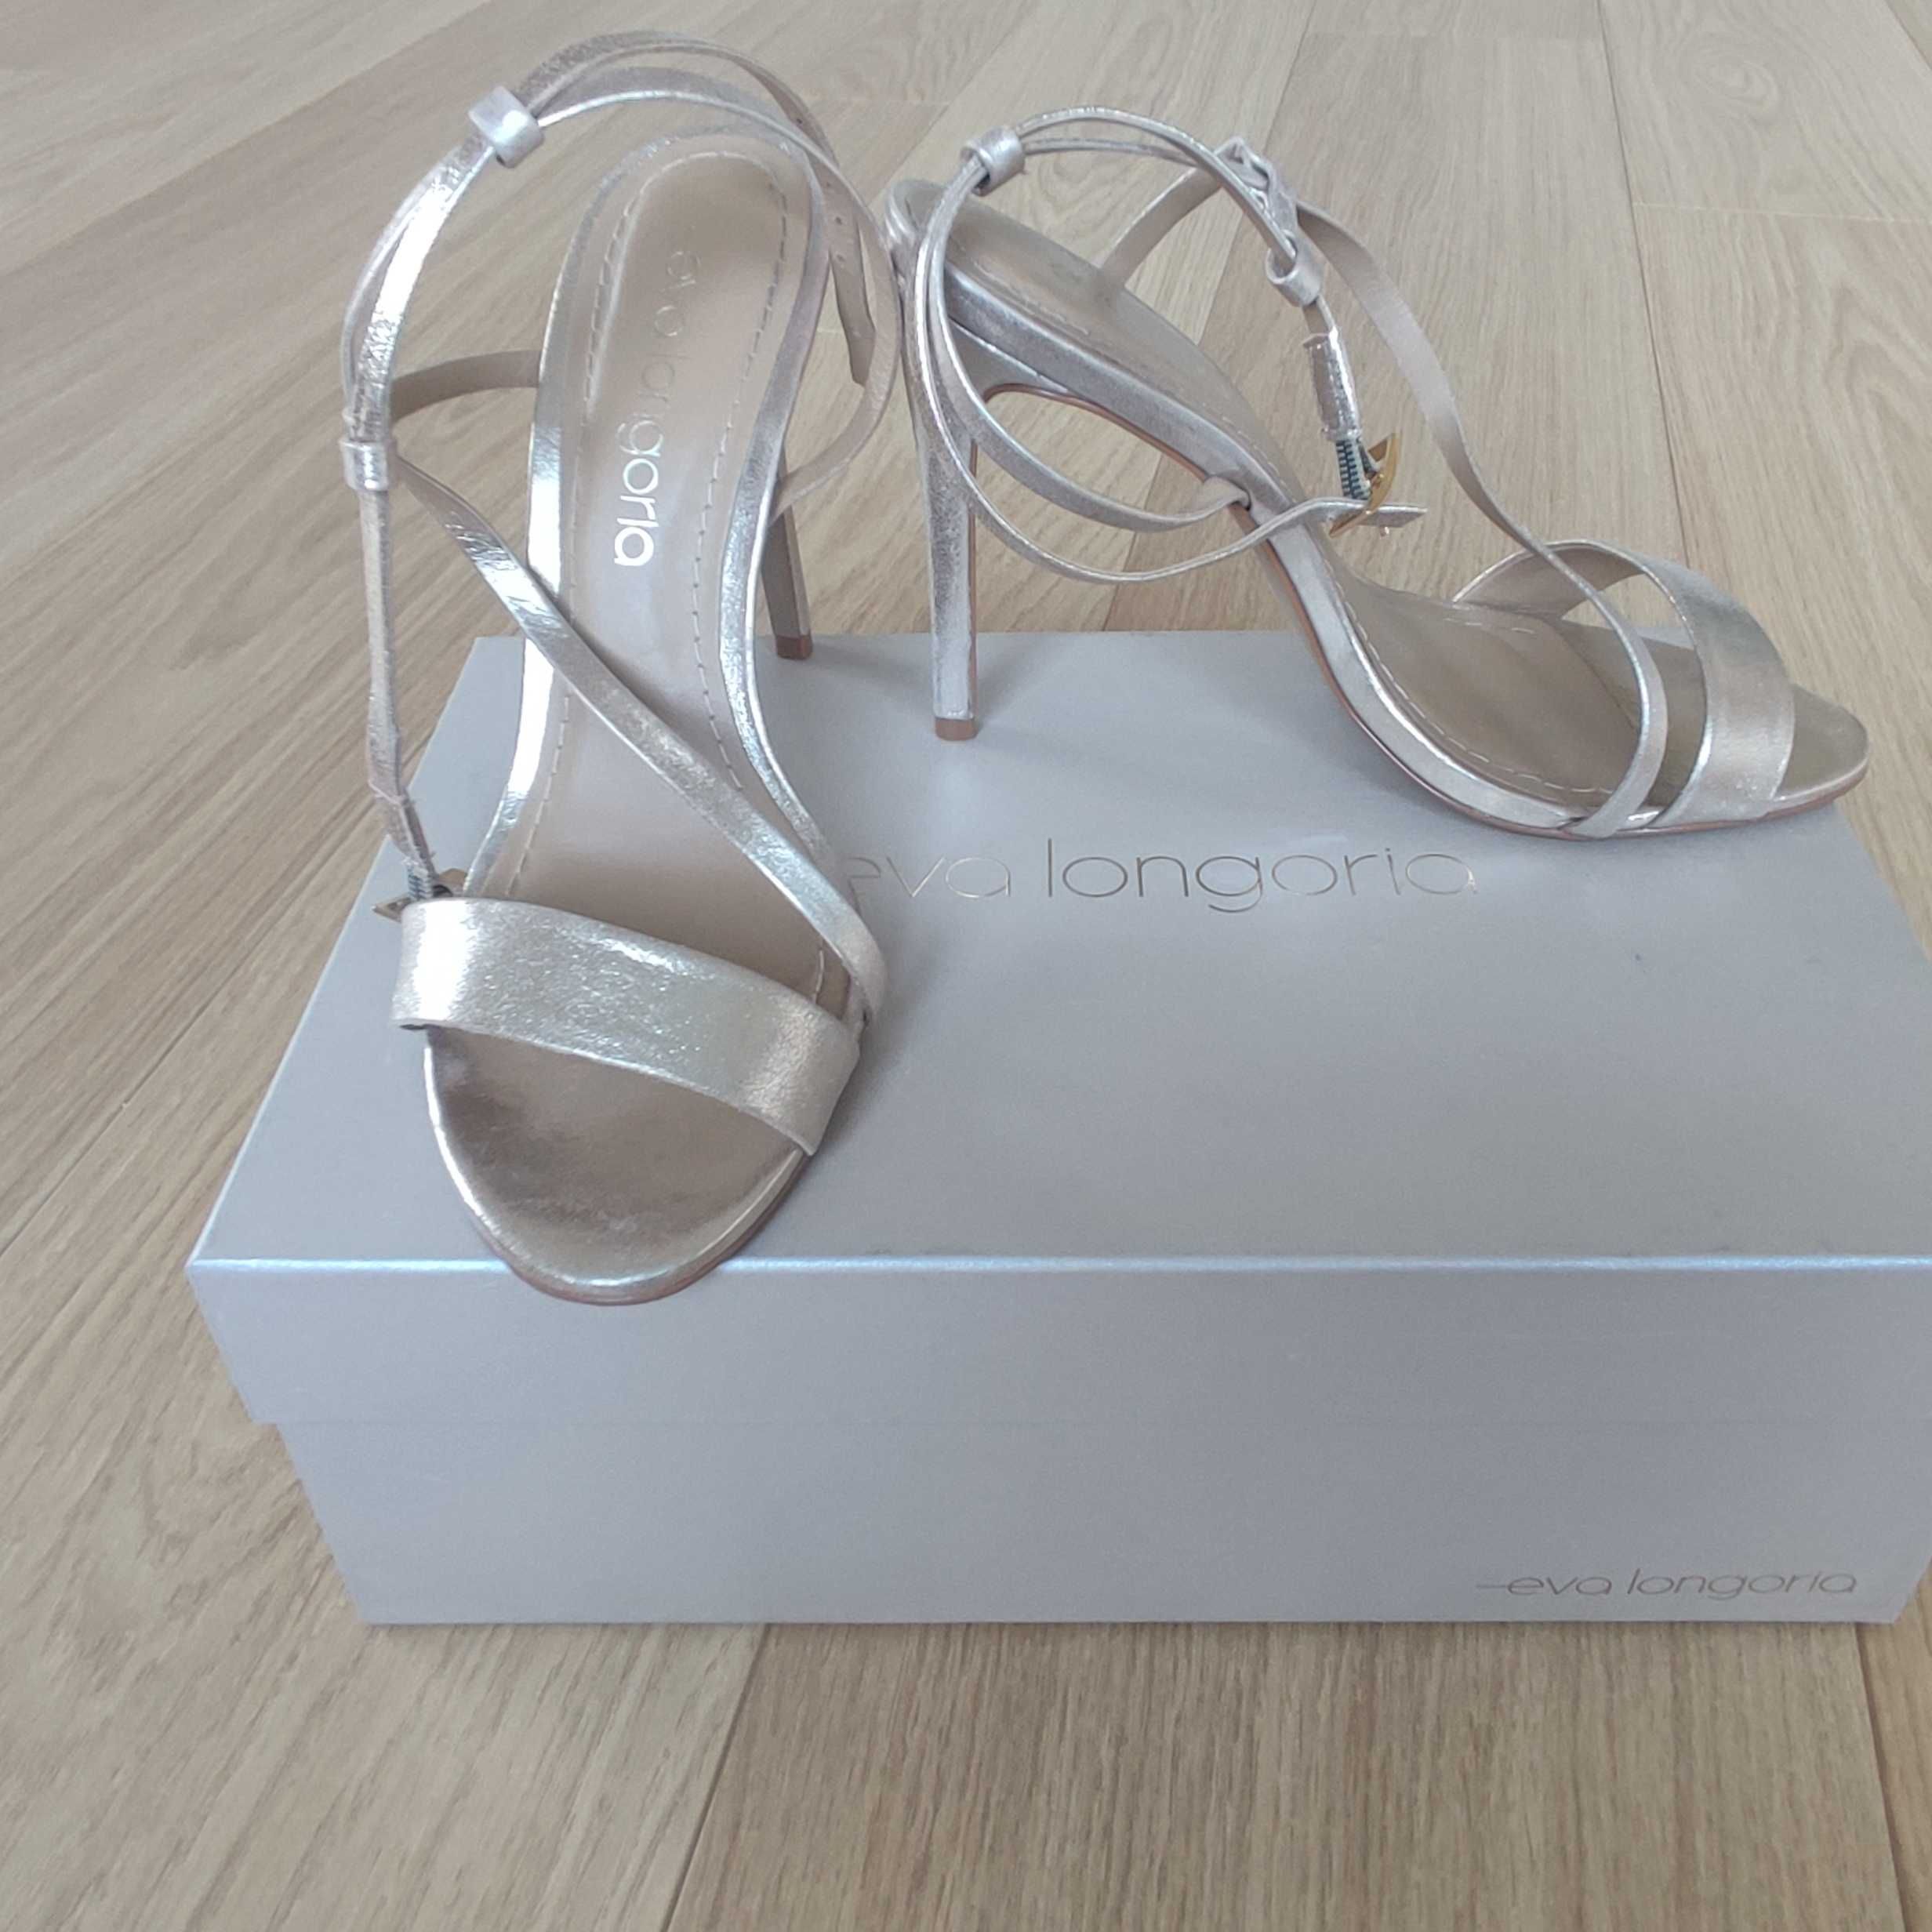 Златни обувки Eva Longoria, 38 номер, естествена кожа